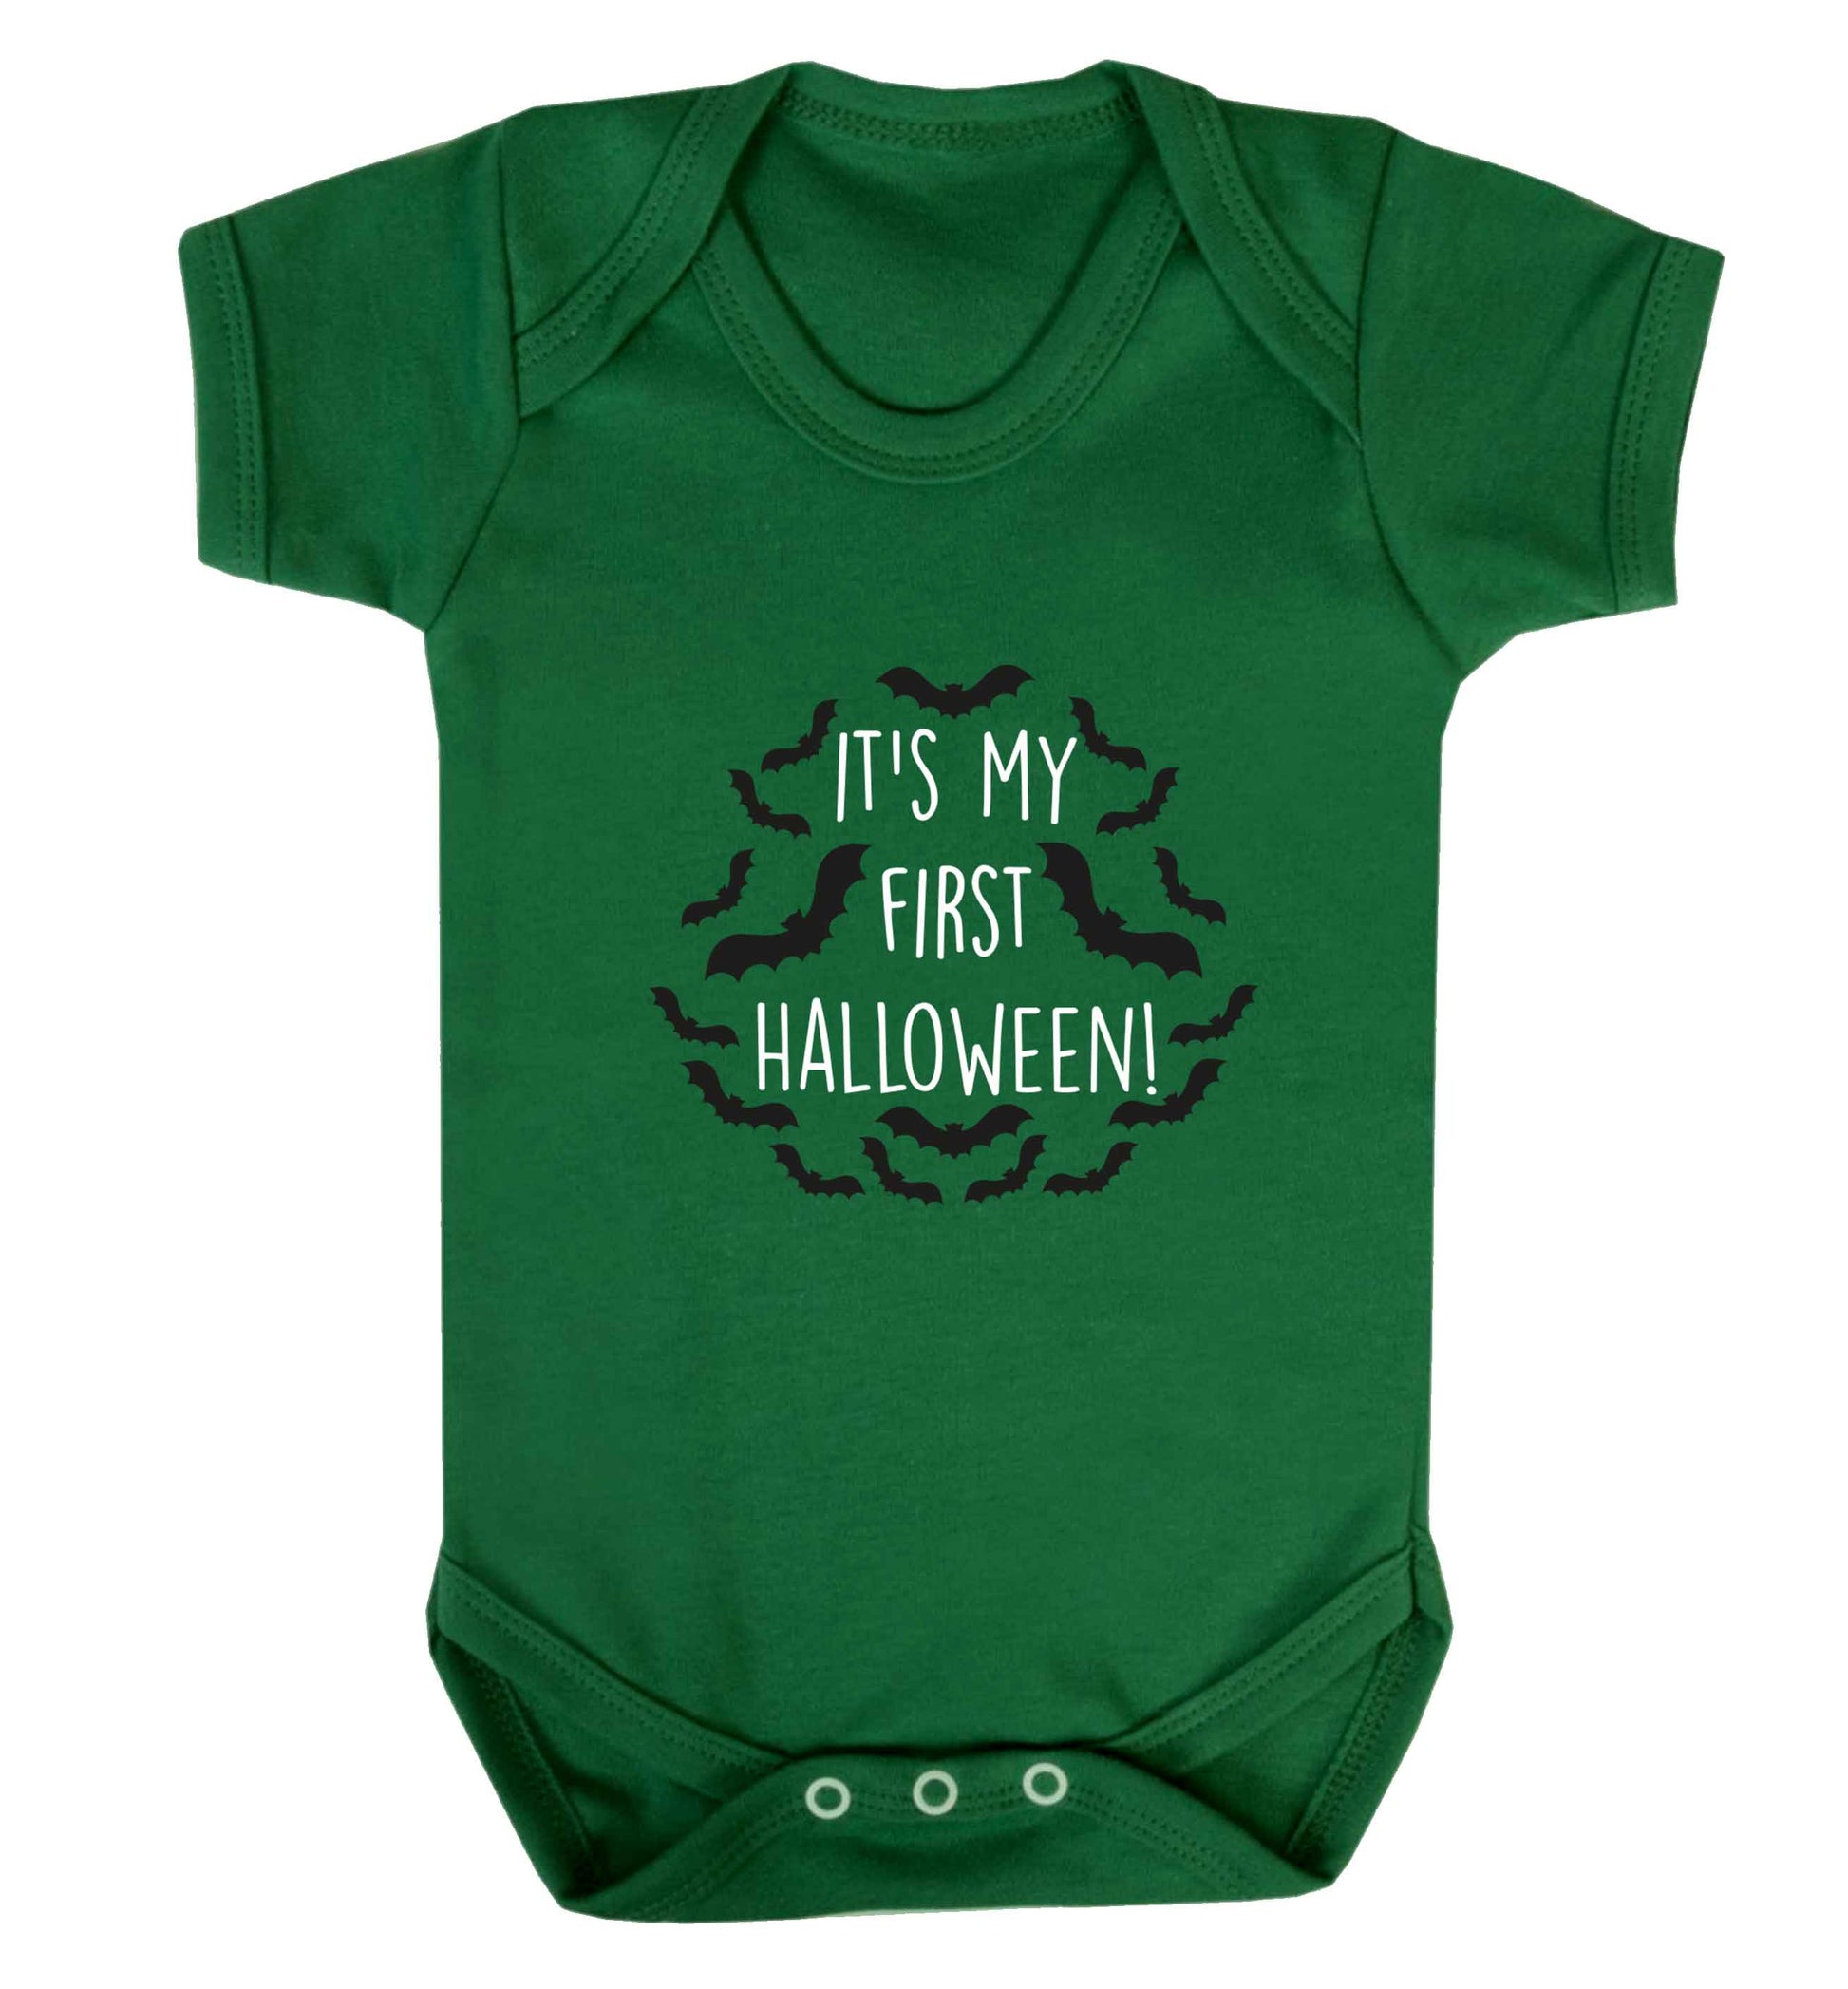 It's my first halloween - bat border baby vest green 18-24 months